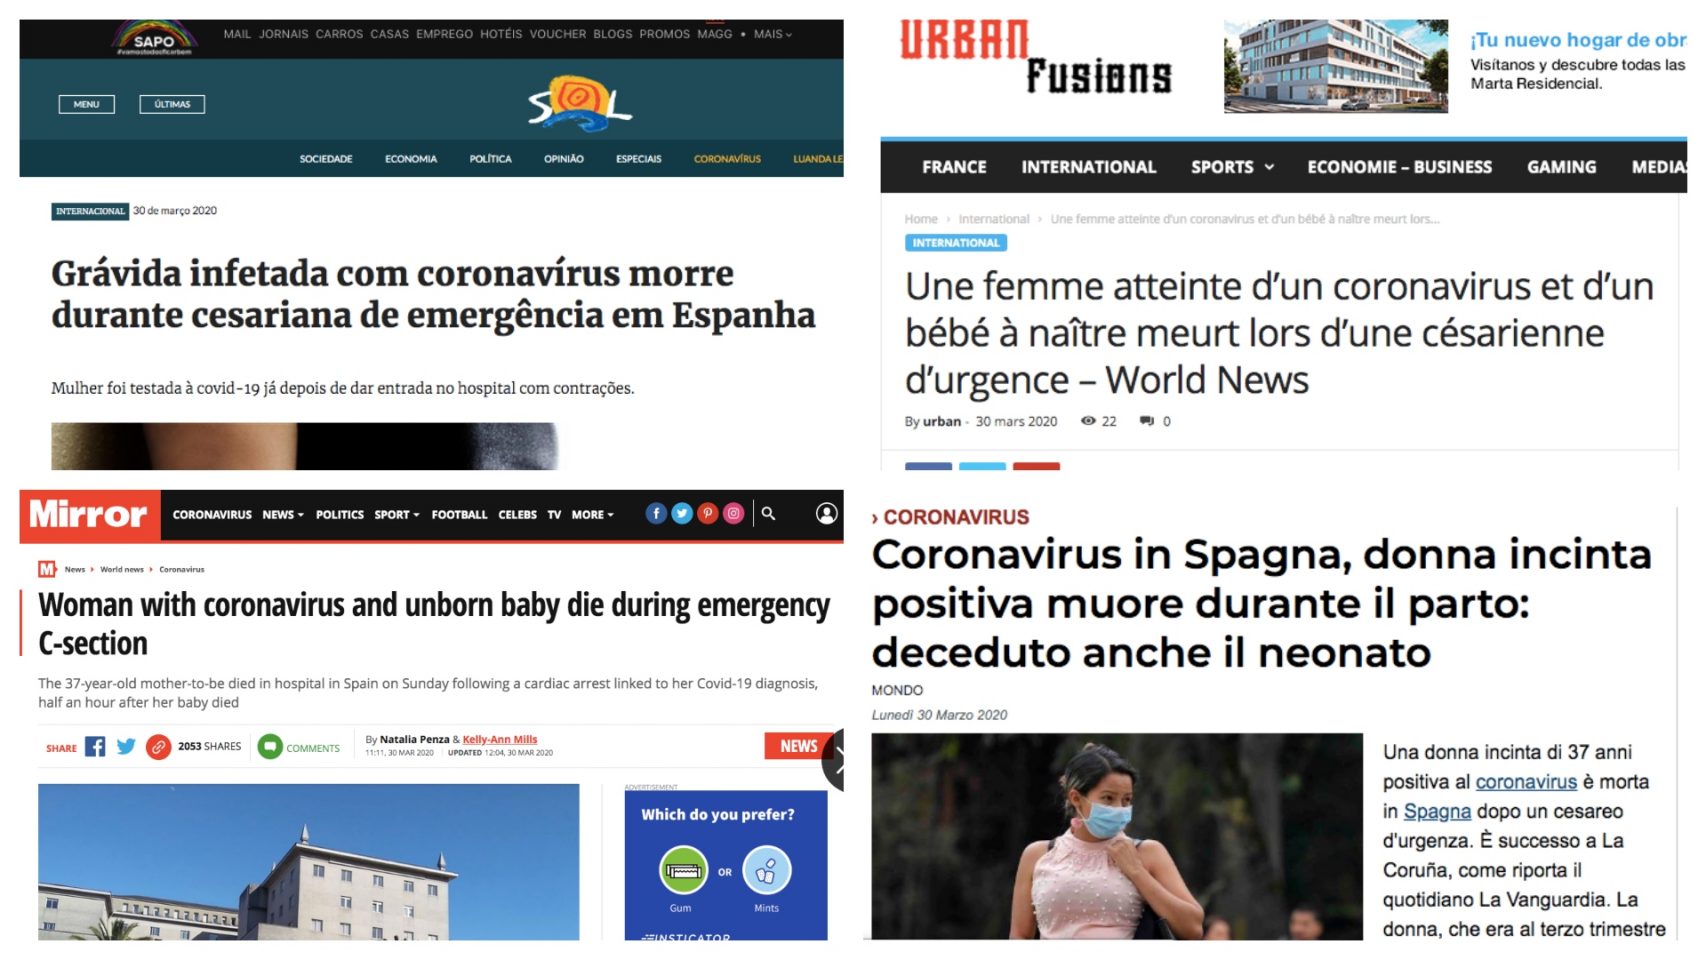 Imagen collage de algunos de los medios internacionales que se han hecho eco de la noticia